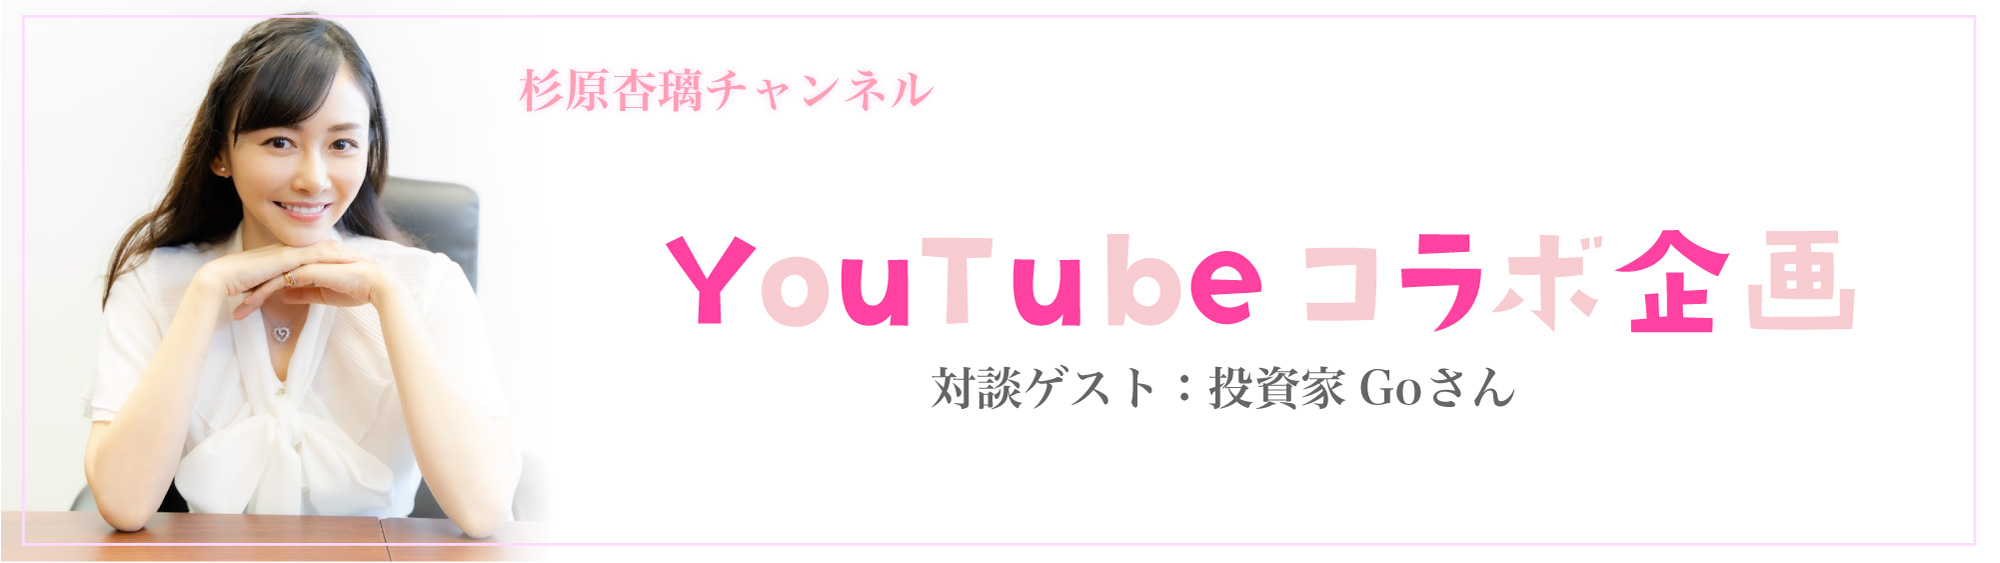 杉原杏璃チャンネル〜YouTubeコラボ企画（対談ゲスト：投資家Goさん）〜